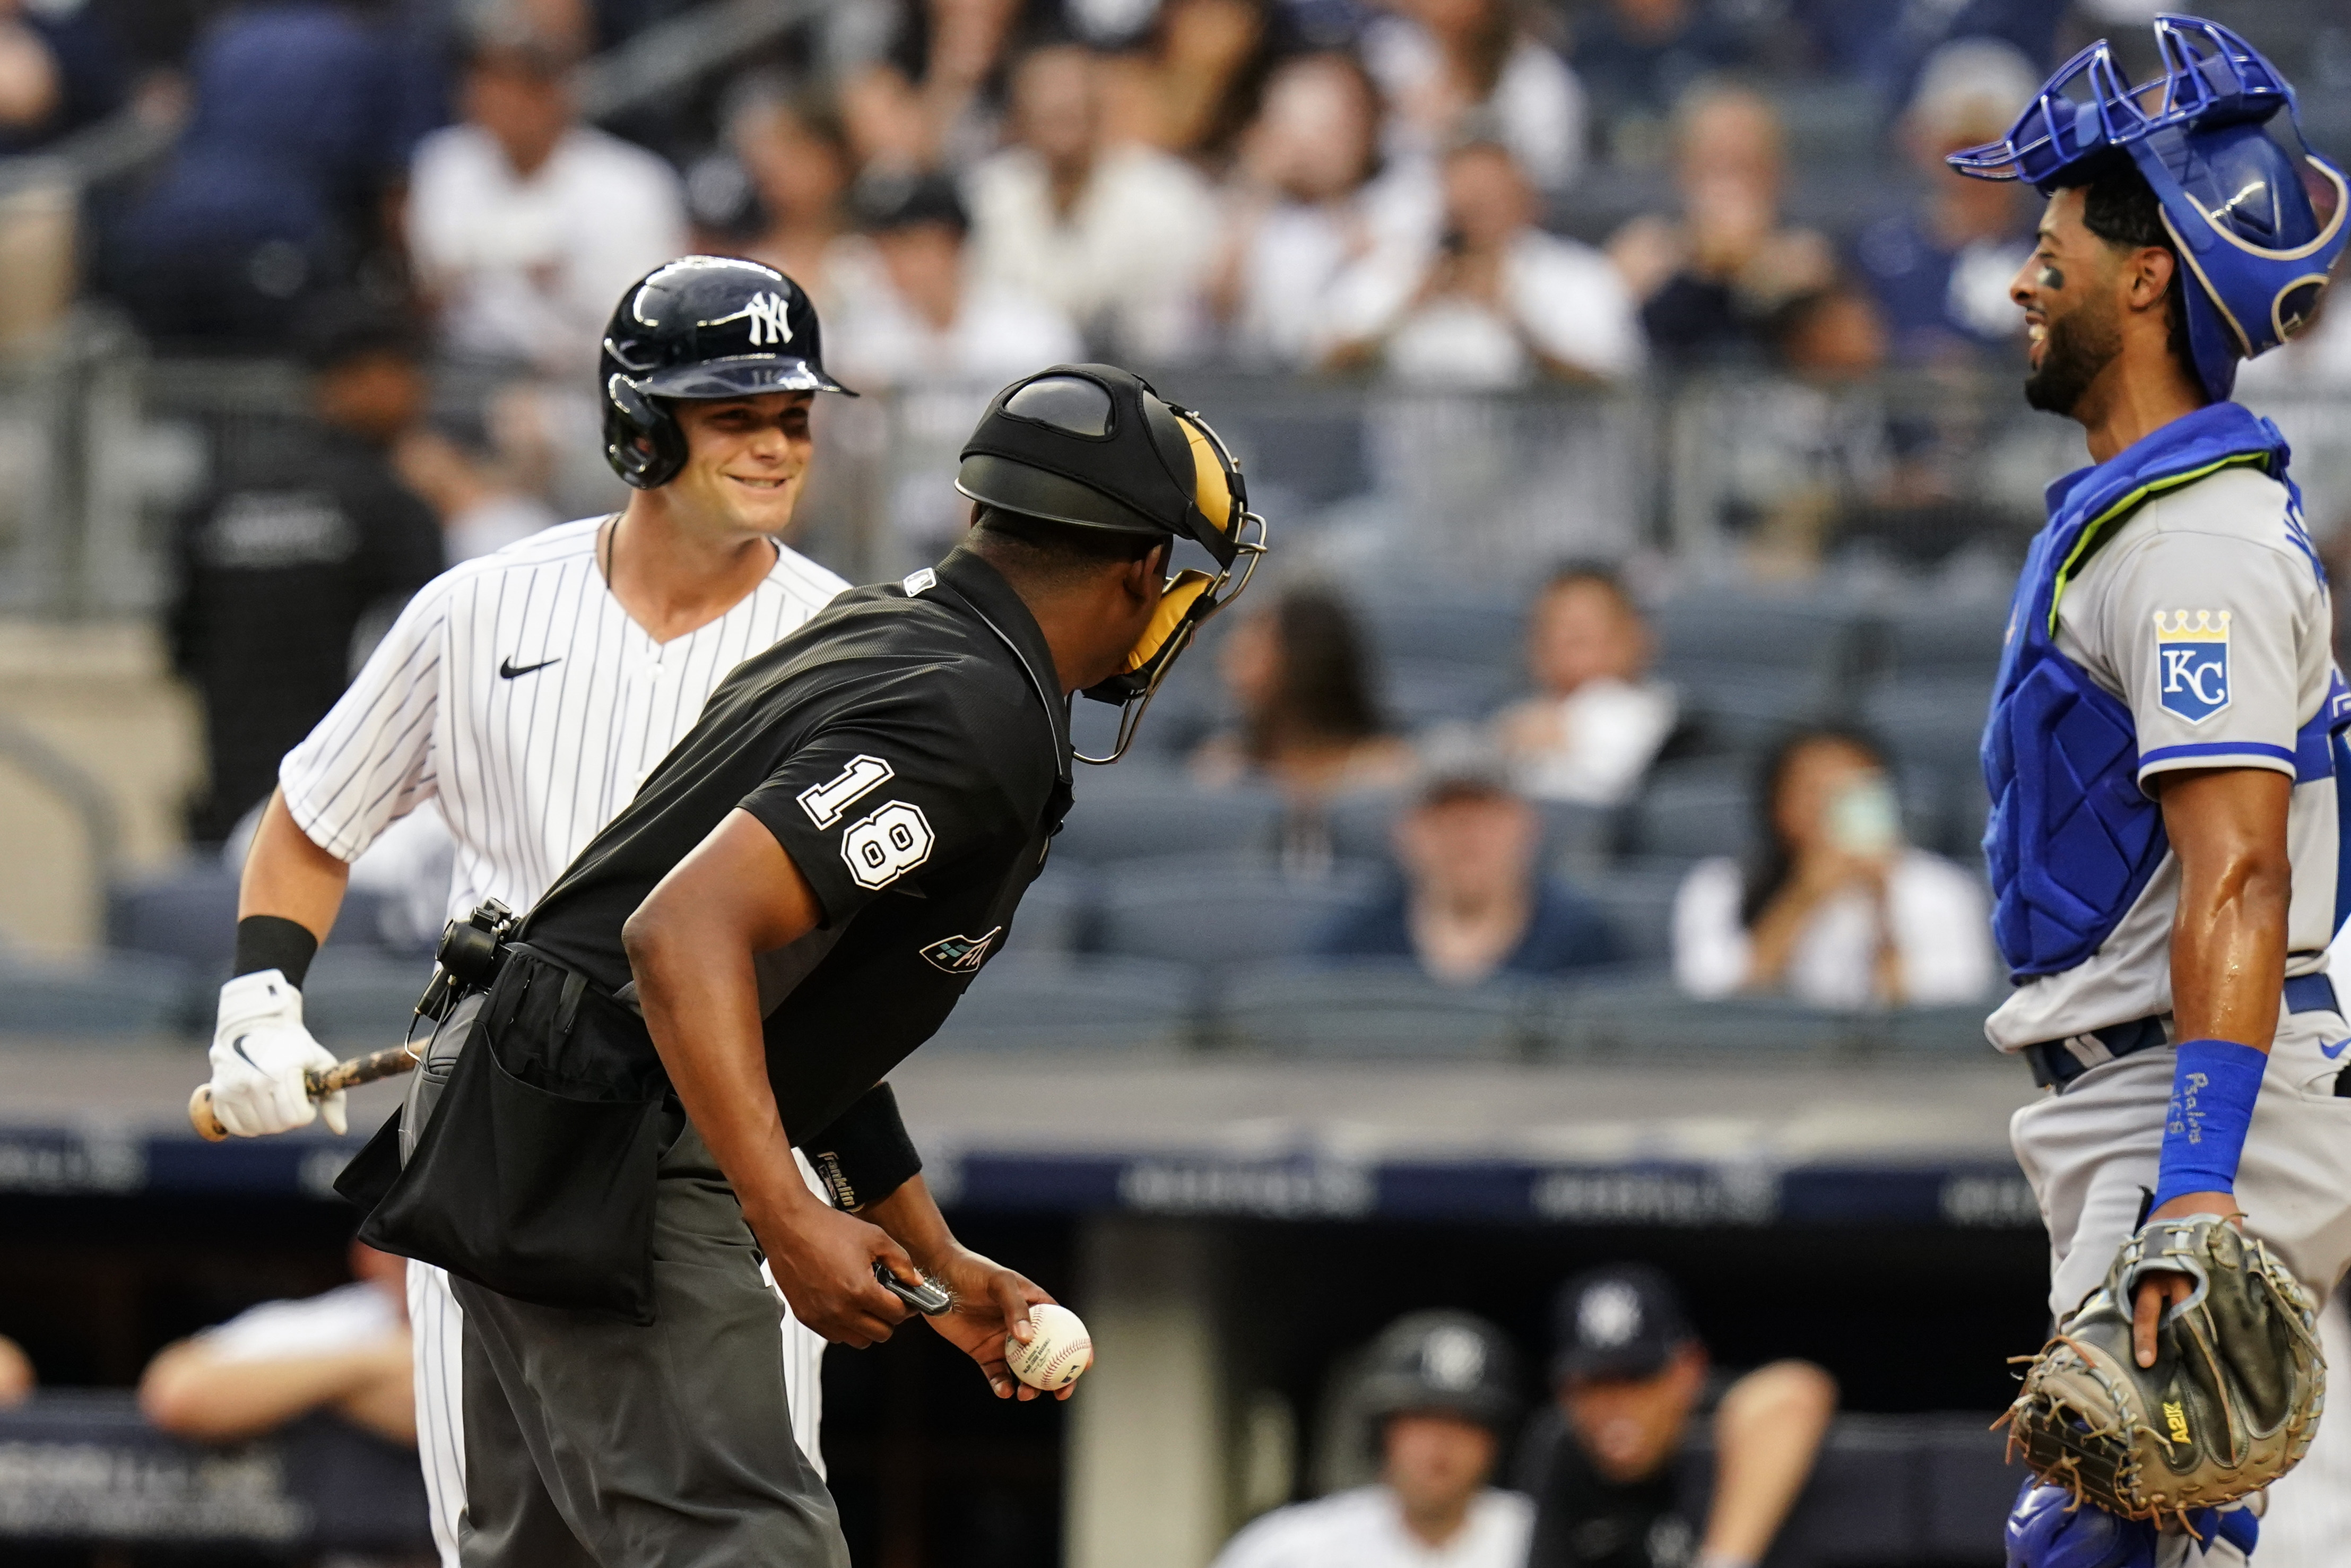 Aaron Judge's walk off saves Yankees in win over Royals